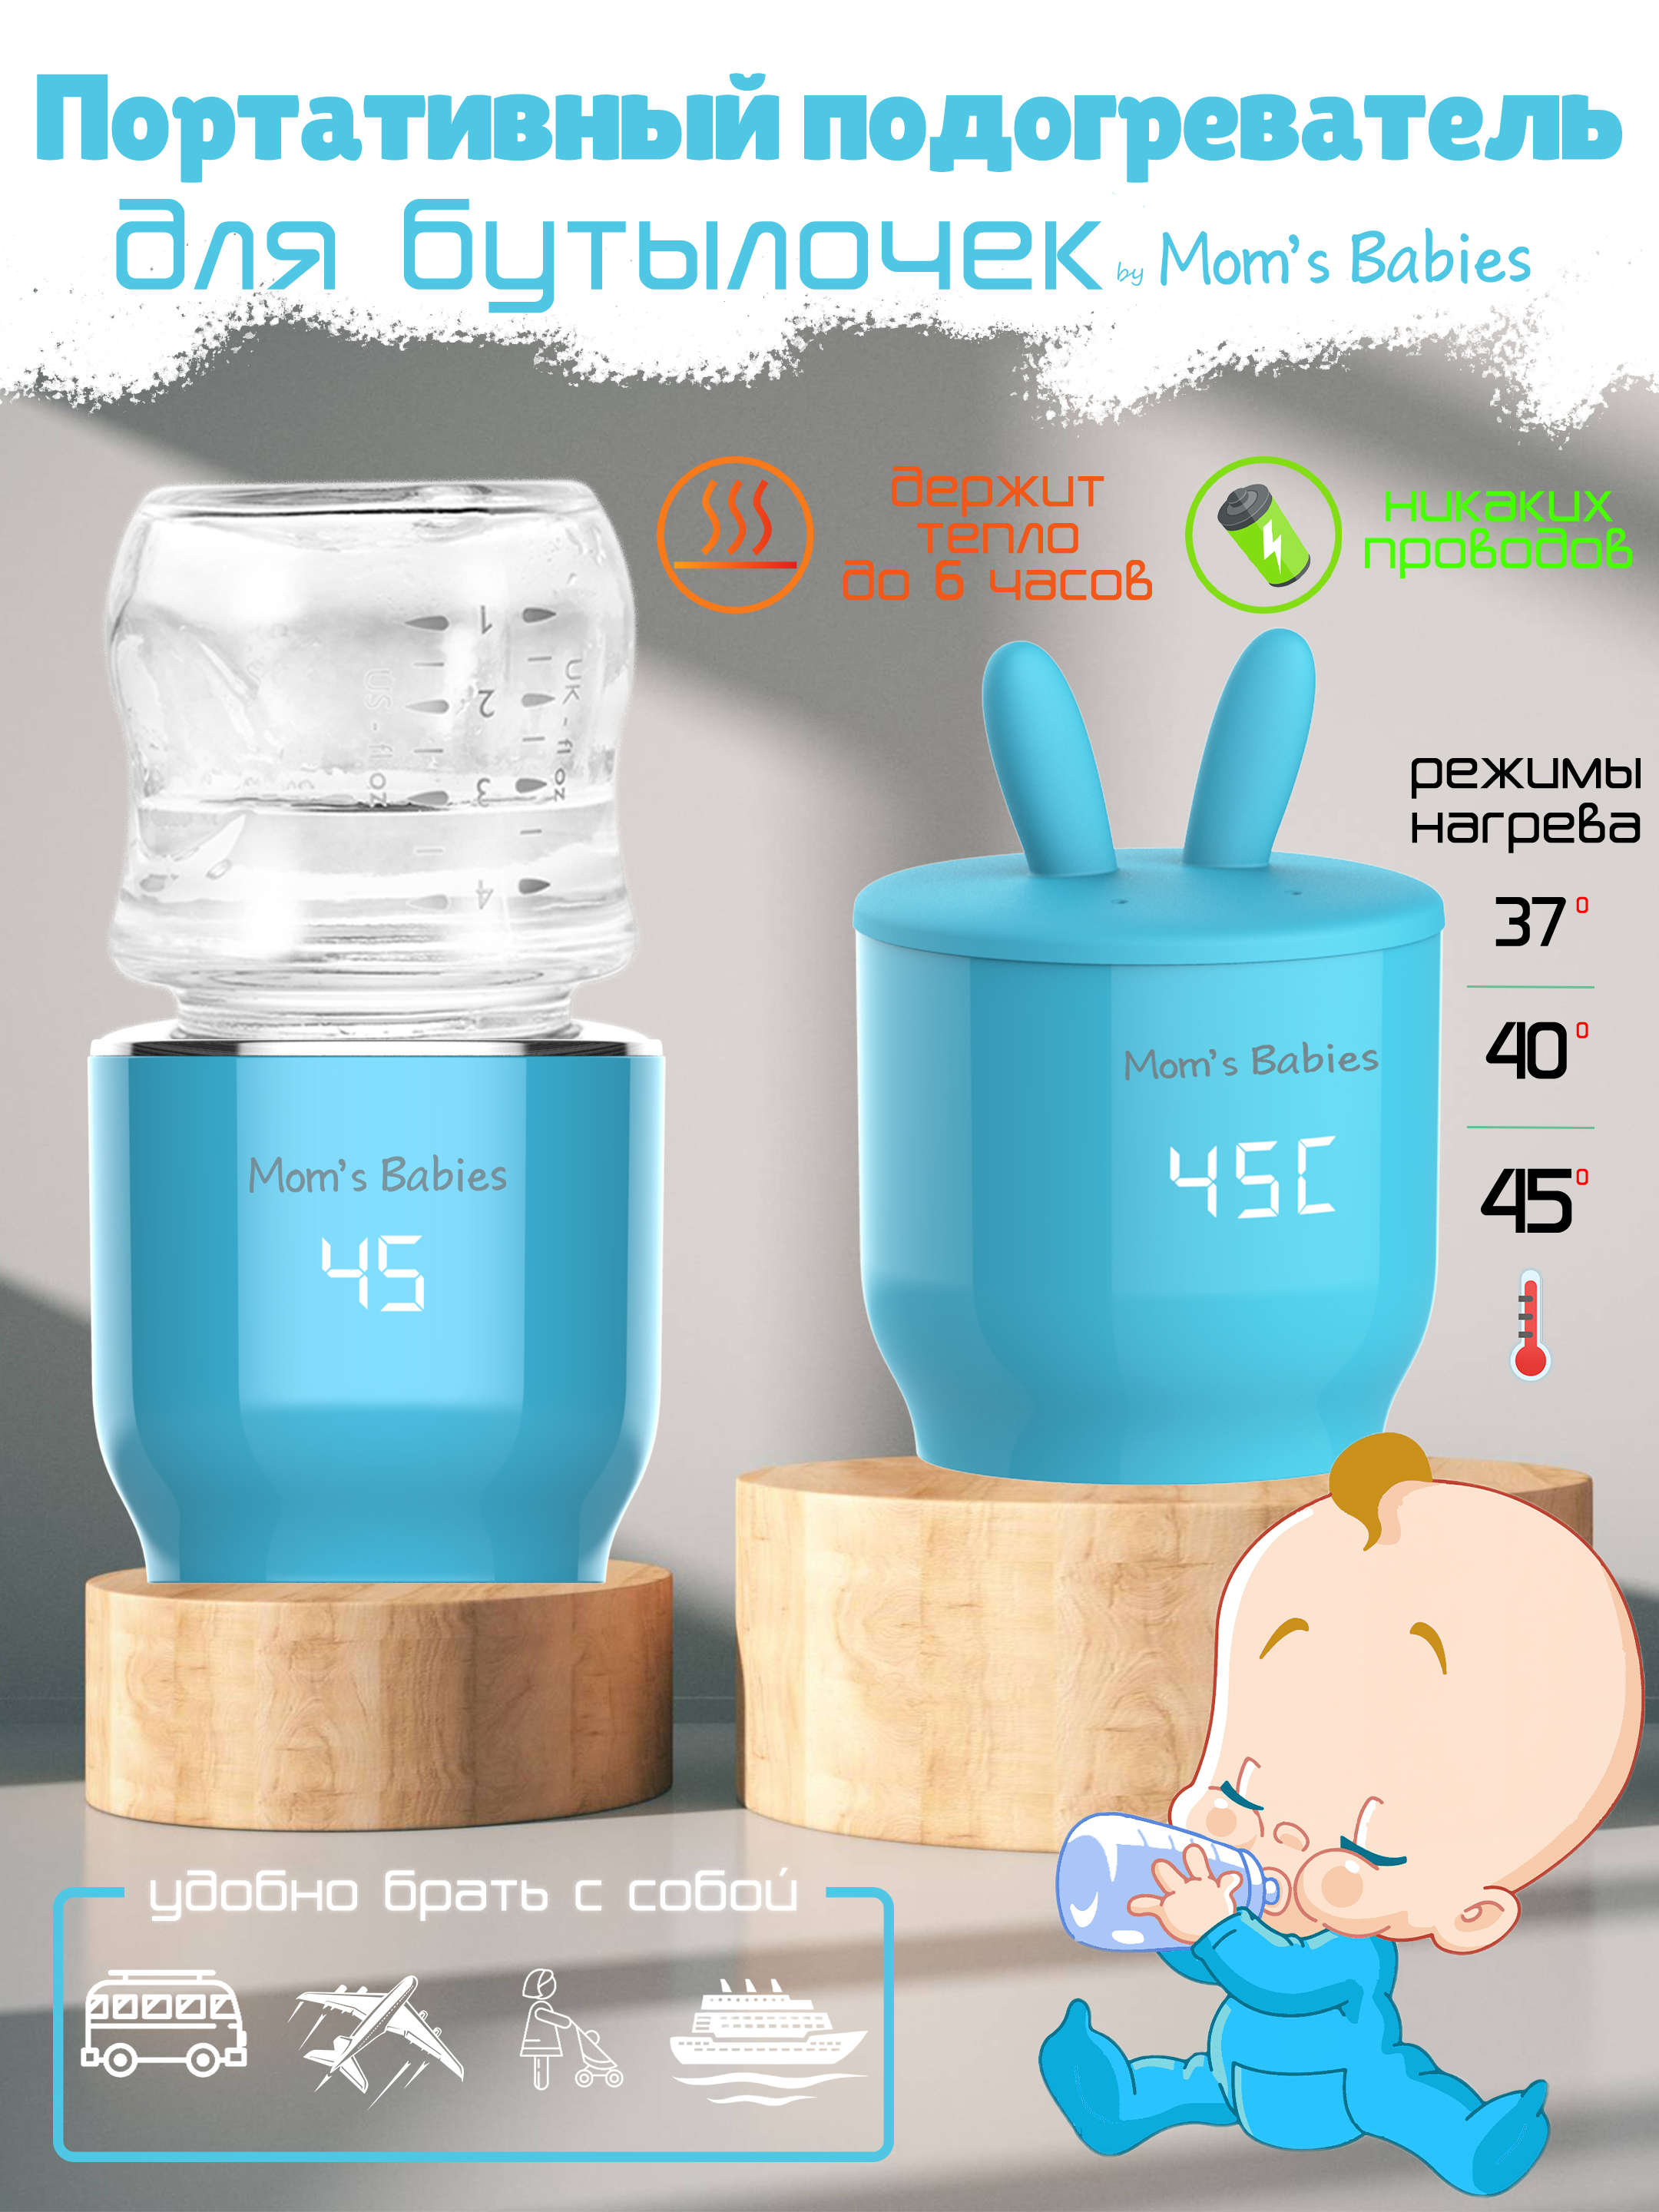 Портативный подогреватель Mom's Babies FS01 для бутылочек и детского питания голубой портативный подогреватель solmax w97201 для бутылочек и детского питания белый